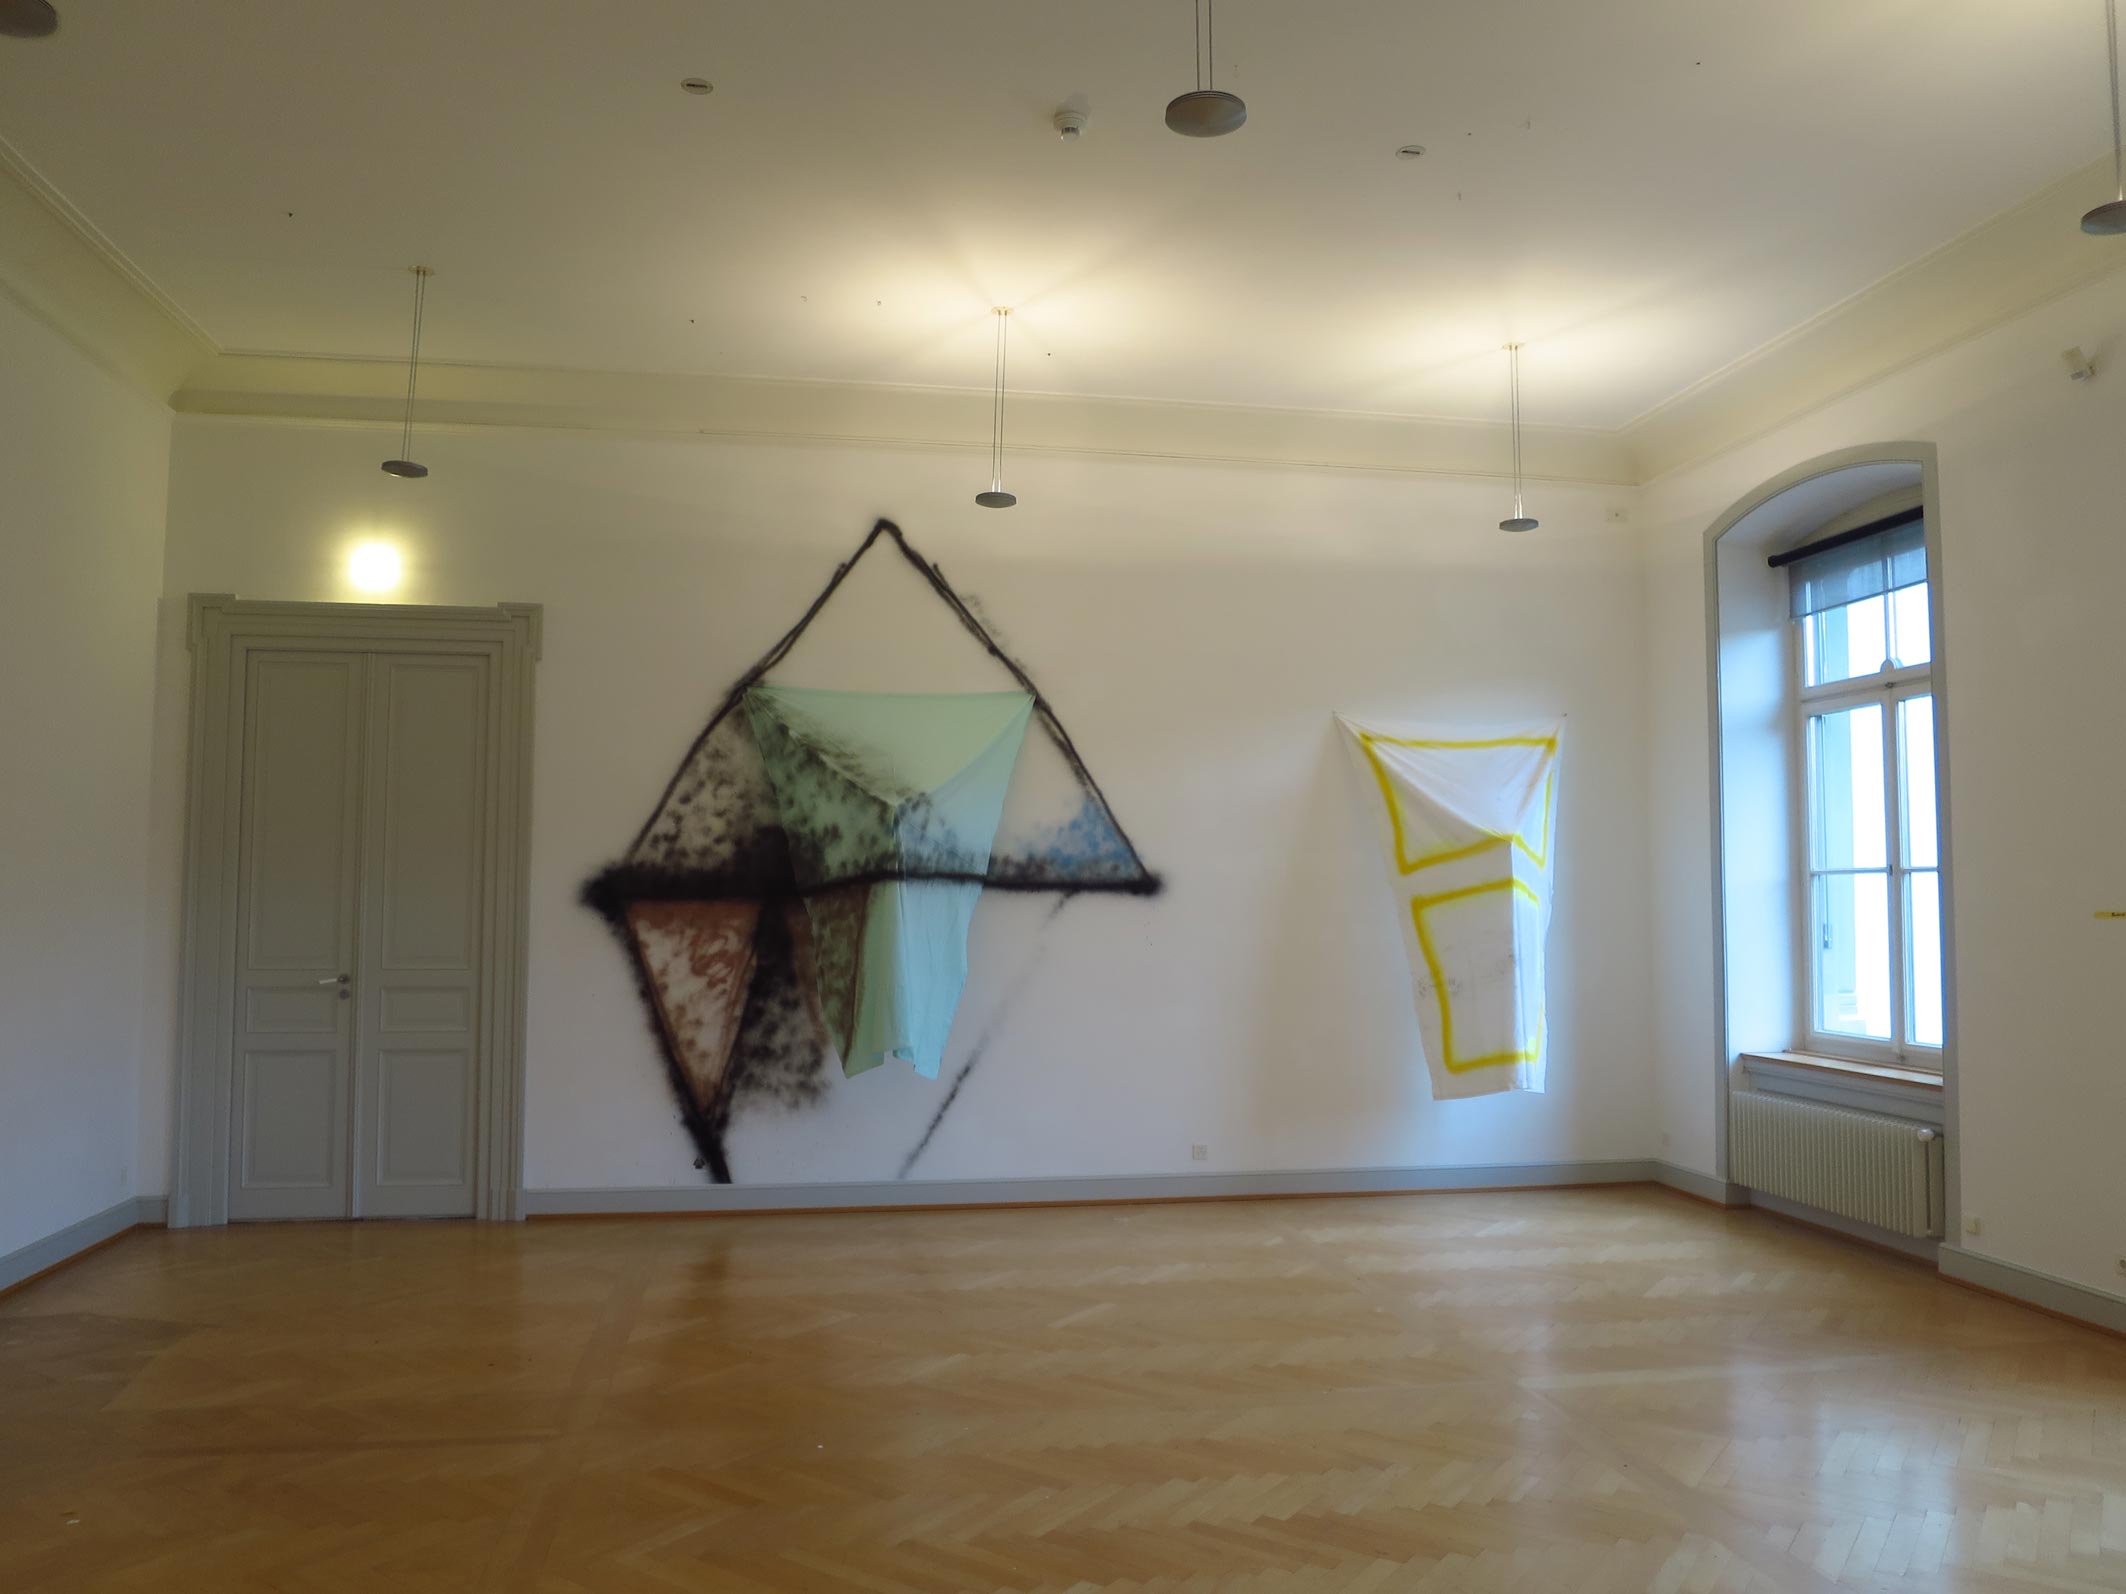 Stefan Inauen
OT
2015
Sprühlack, Baumwolle, Keilrahmen
Ausstellungsansicht 
Kunstmuseum St.Gallen
